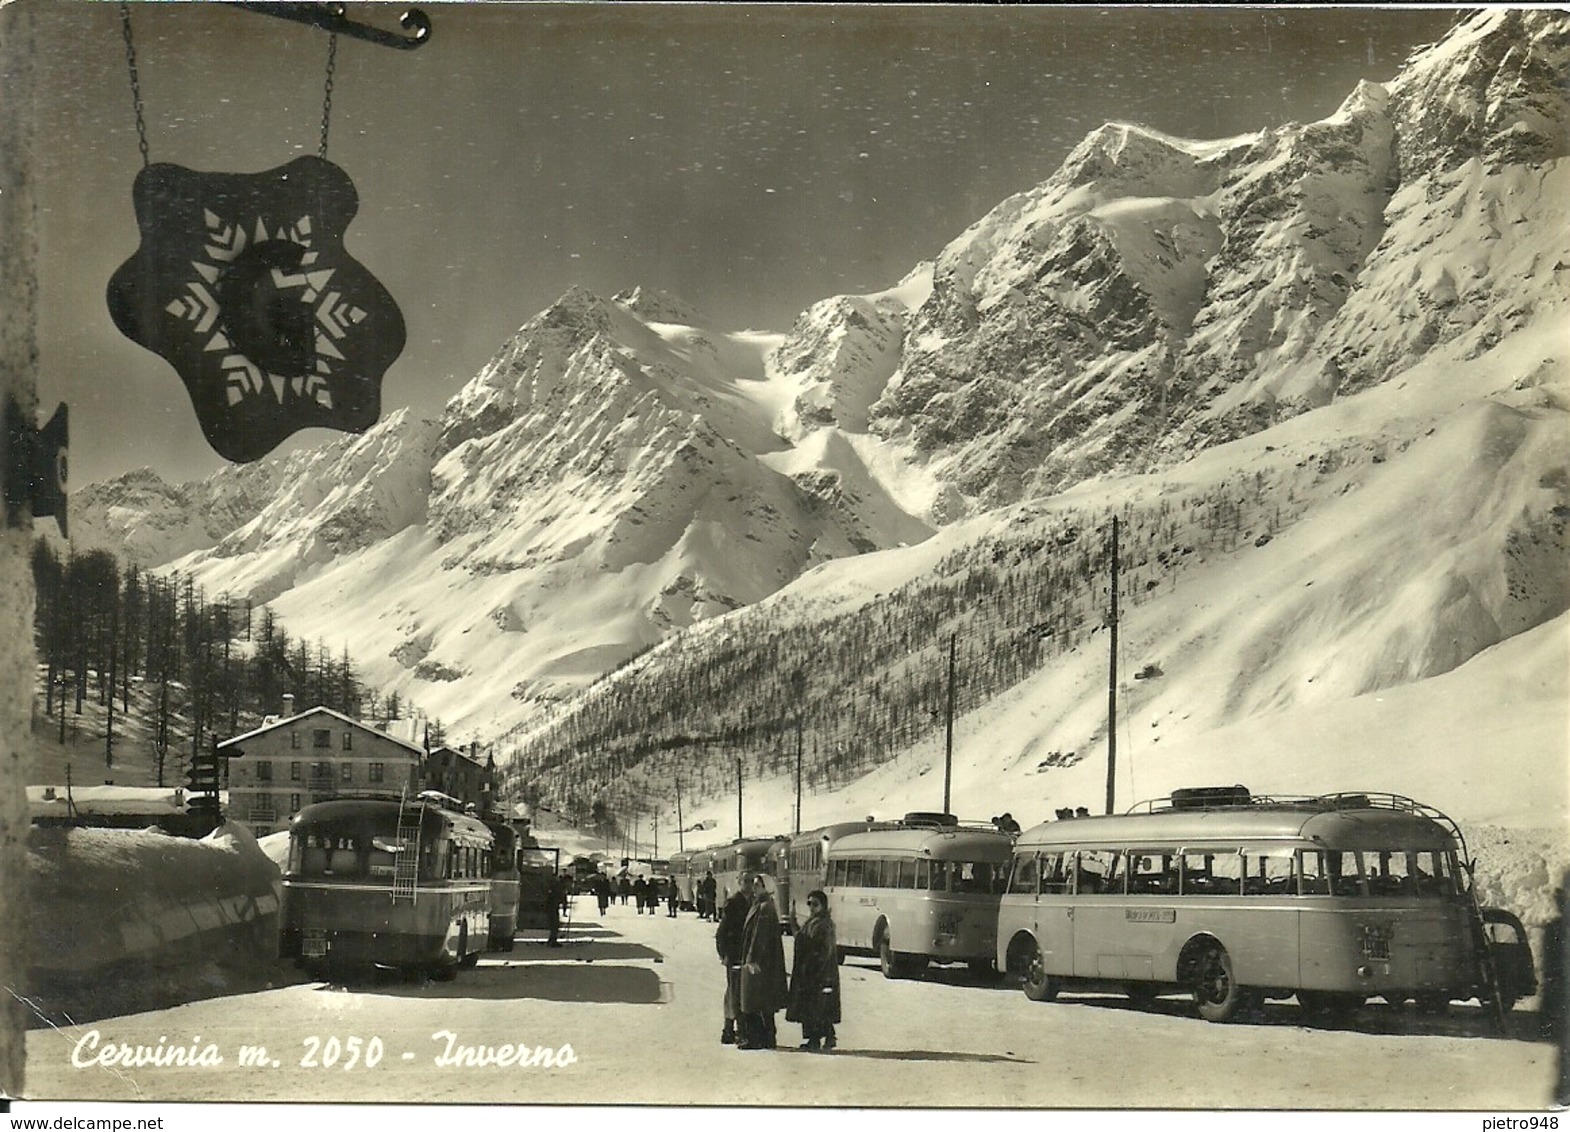 Cervinia (Aosta) Inverno, Pulman Sciatori E Scorcio Panoramico, Bus Of Skiers And Panoramic View, Bus De Skieurs - Aosta